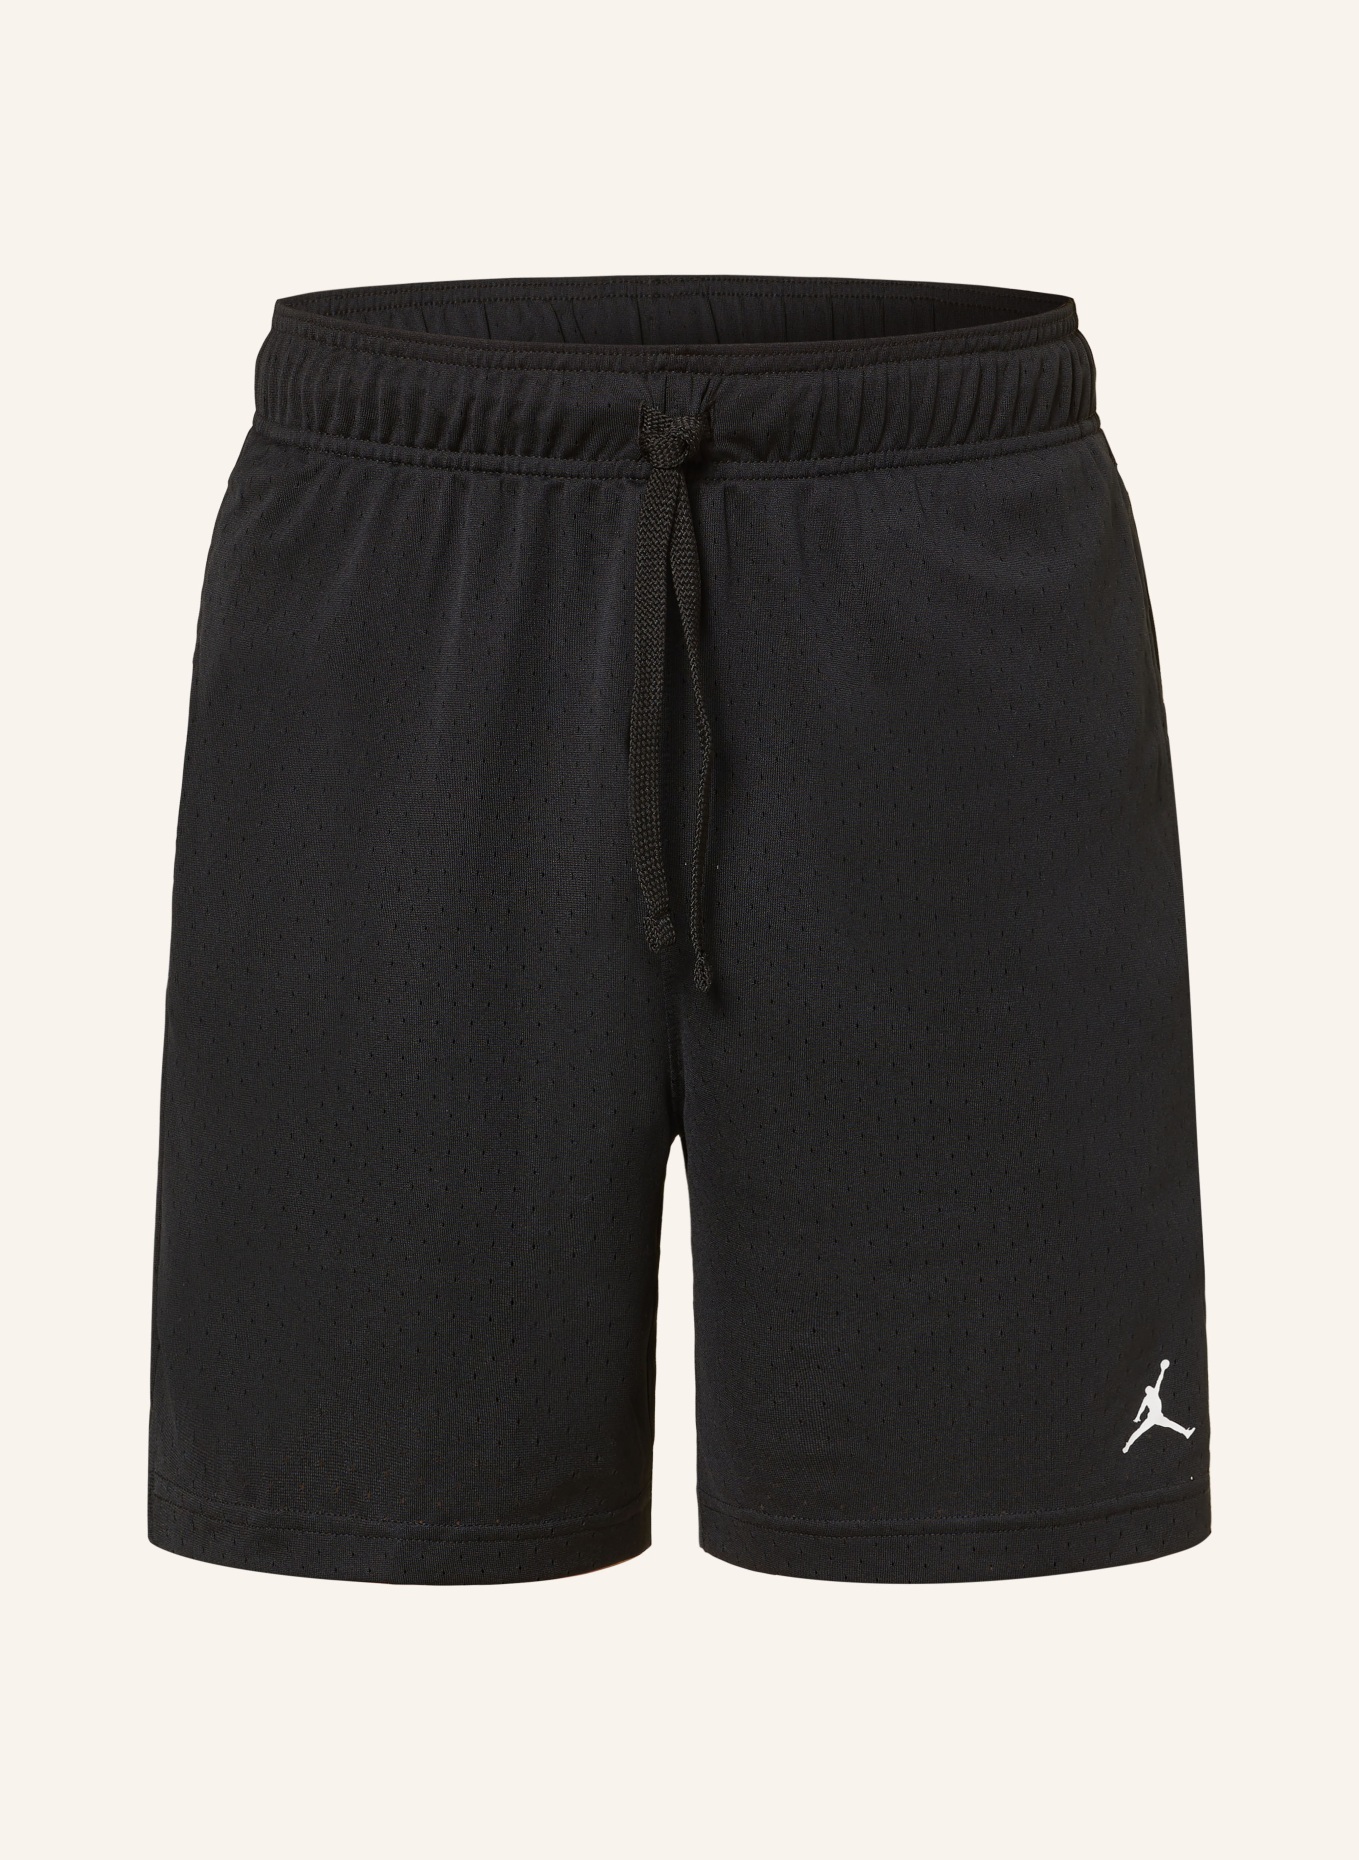 JORDAN Basketball shorts JORDAN SPORT DRI-FIT, Color: BLACK/ WHITE (Image 1)